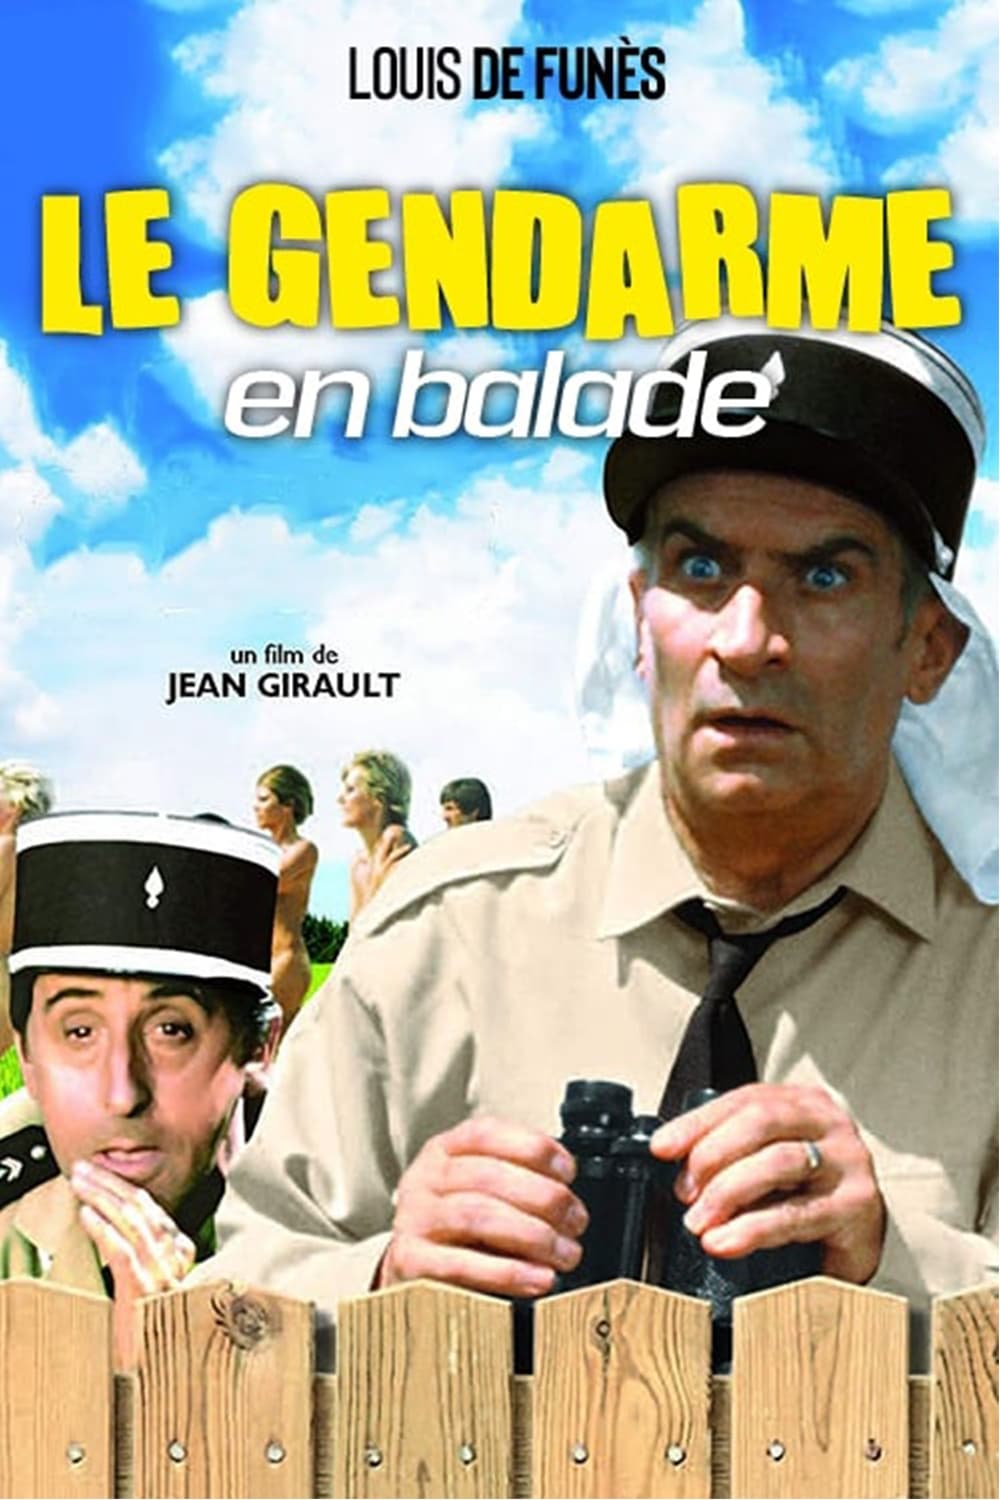 دانلود صوت دوبله فیلم The Gendarme Takes Off 1970